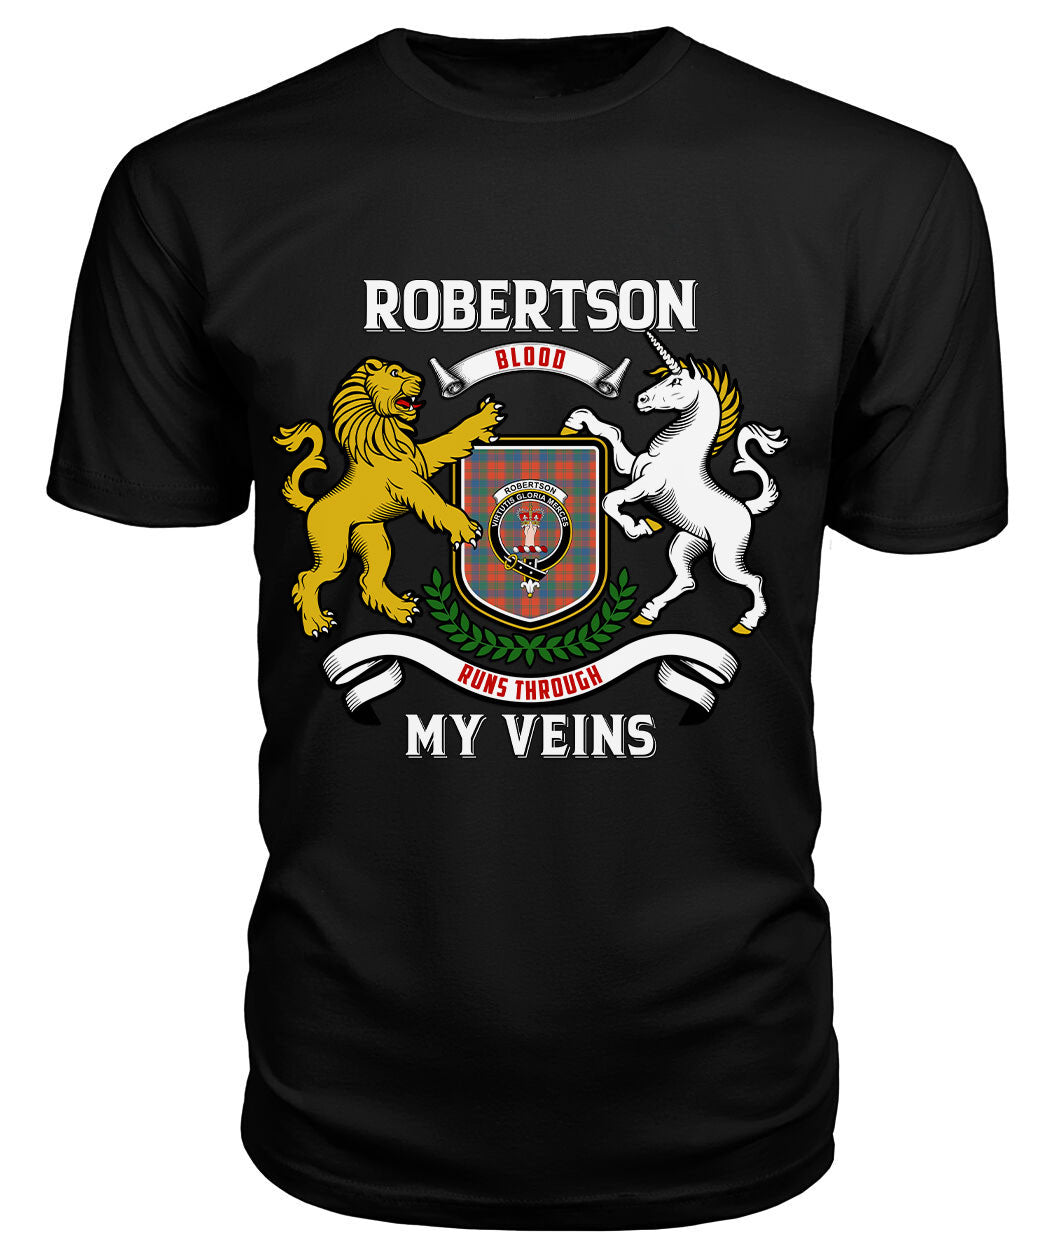 Robertson Ancient Tartan Crest 2D T-shirt - Blood Runs Through My Veins Style